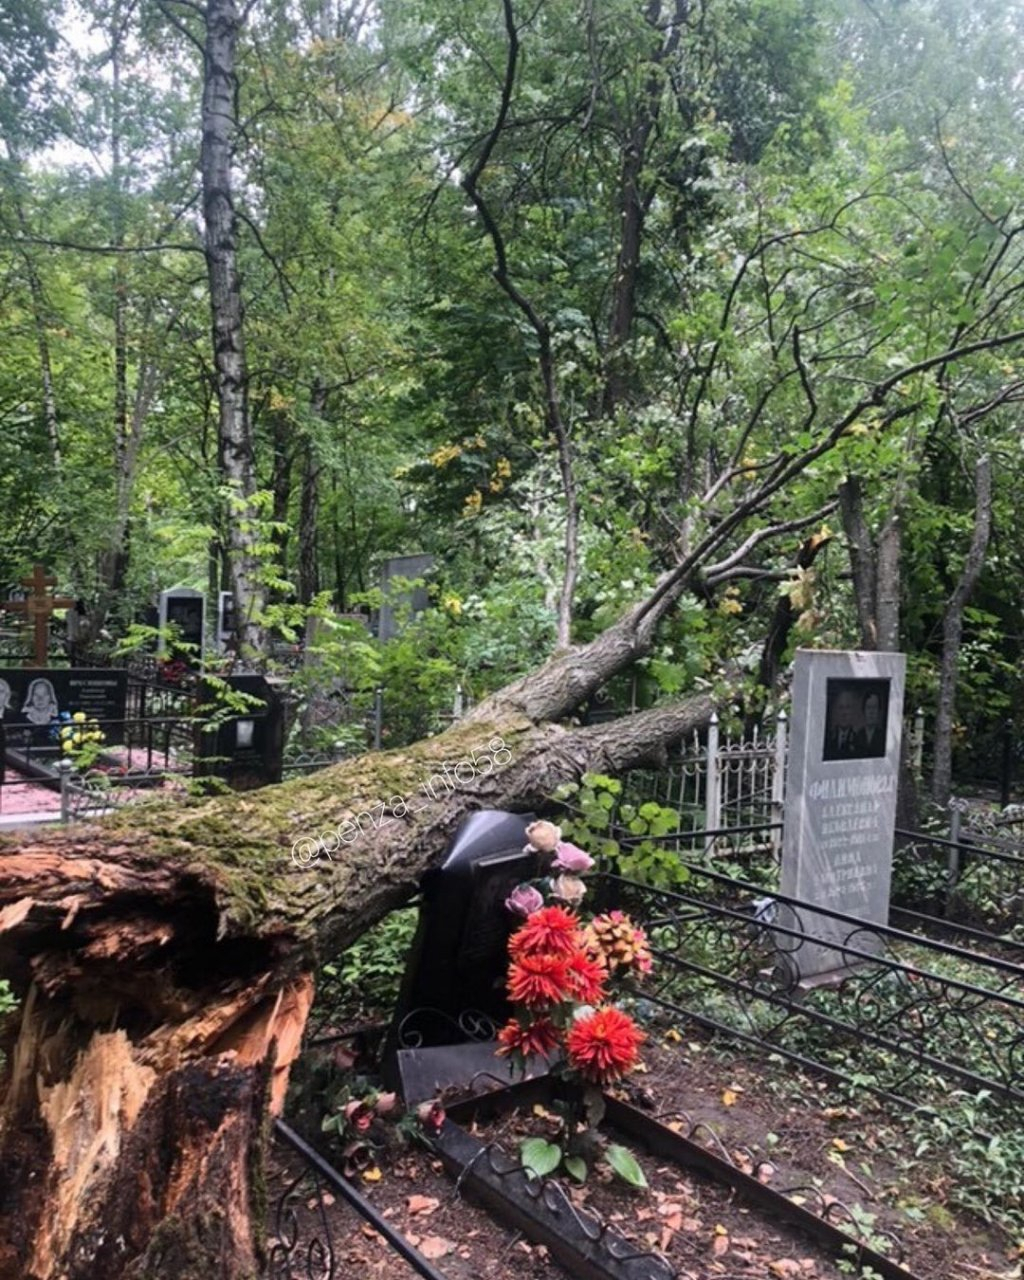 "Там ходить опасно": в Пензе на кладбище рухнуло дерево и повредило памятники